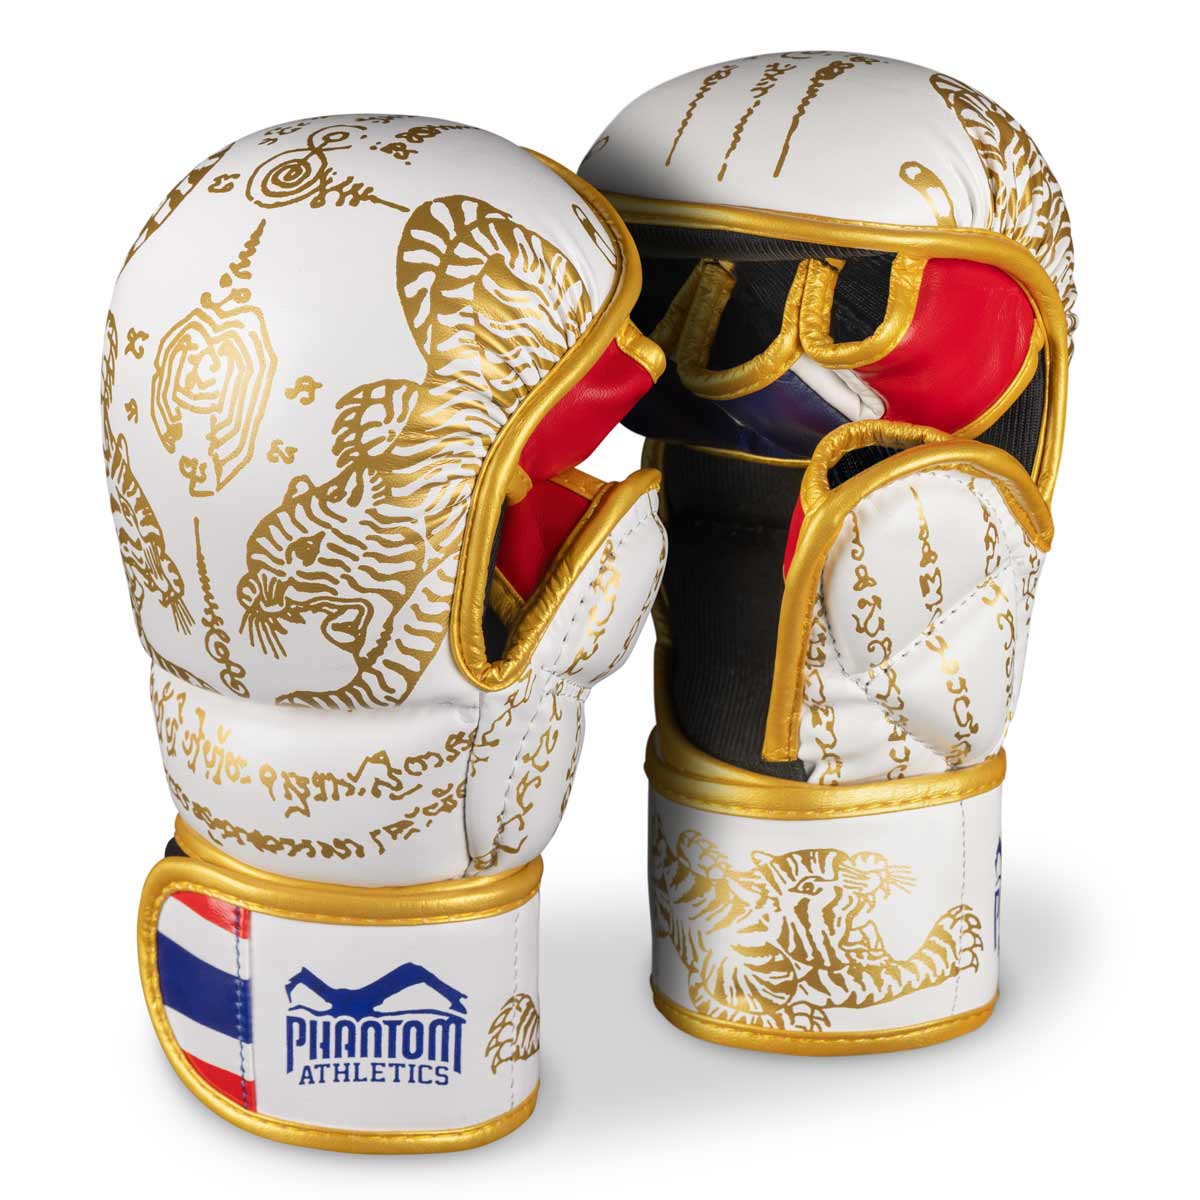 Phantom Муаи Тхаи рукавице за тајландски бокс и ММА спаринге, такмичења и тренинге. У традиционалном Сак Иант дизајну и бела/златна боја.